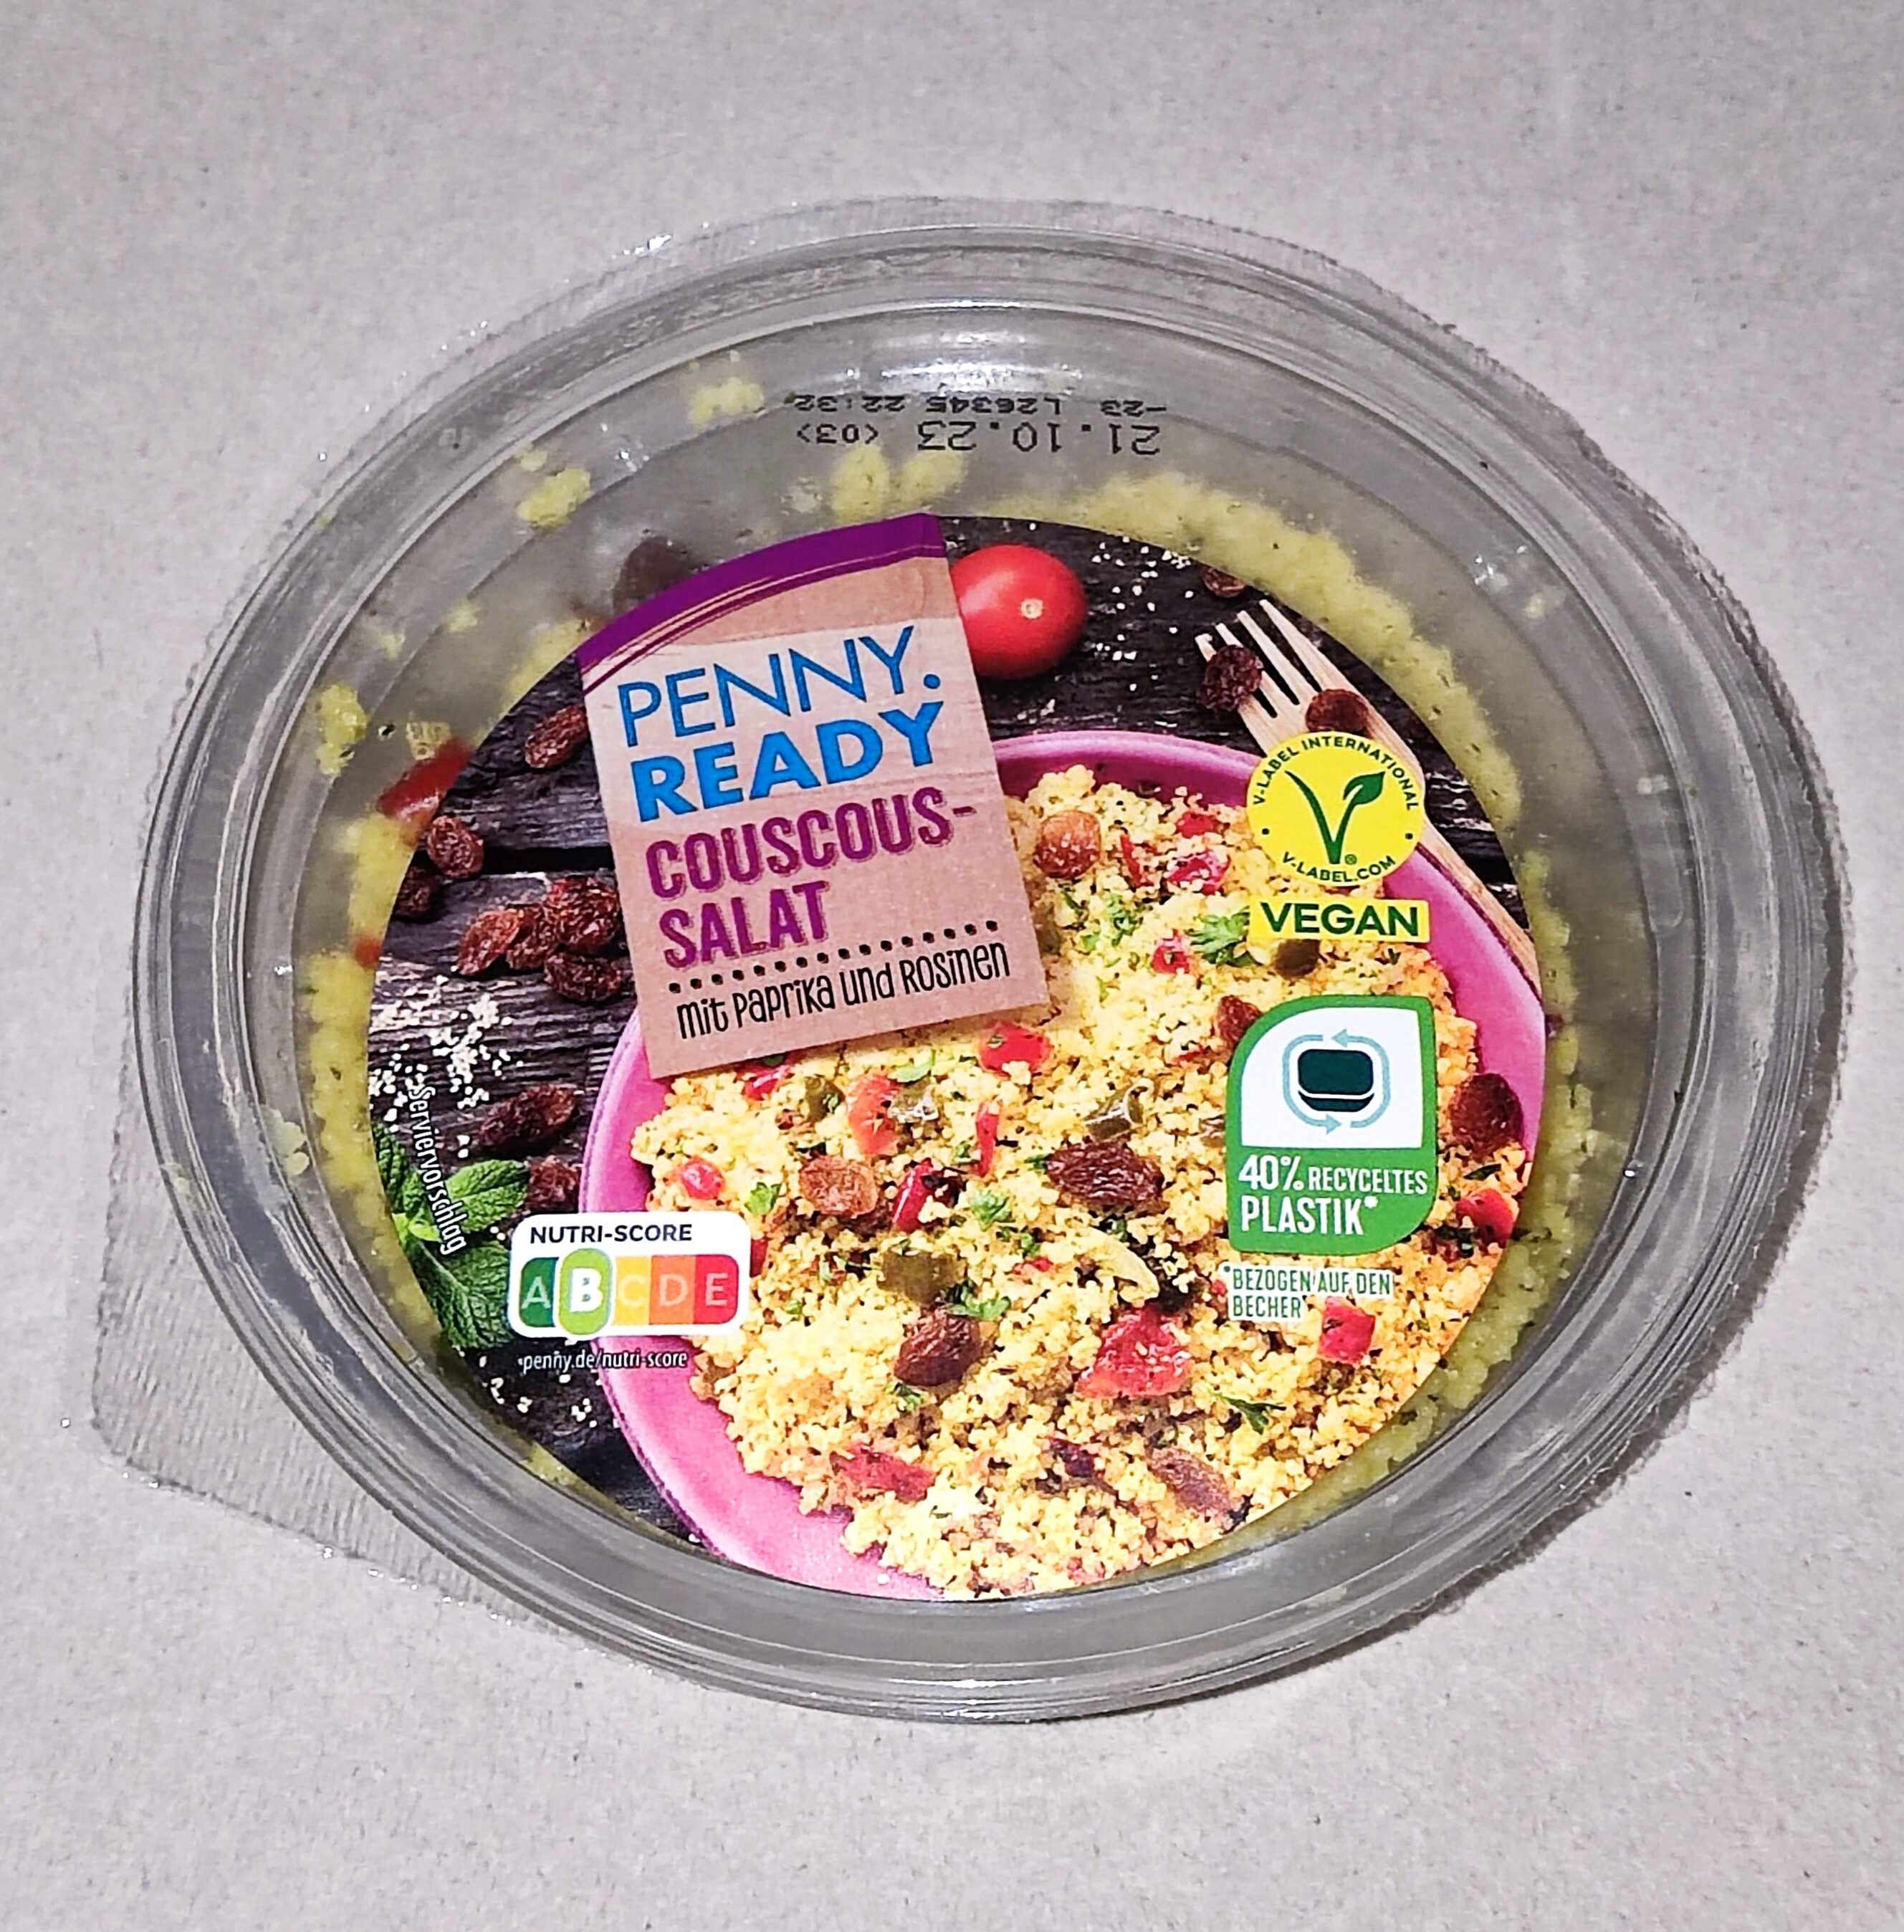 Couscous-Salat mit Paprika und Rosinen - Produkt